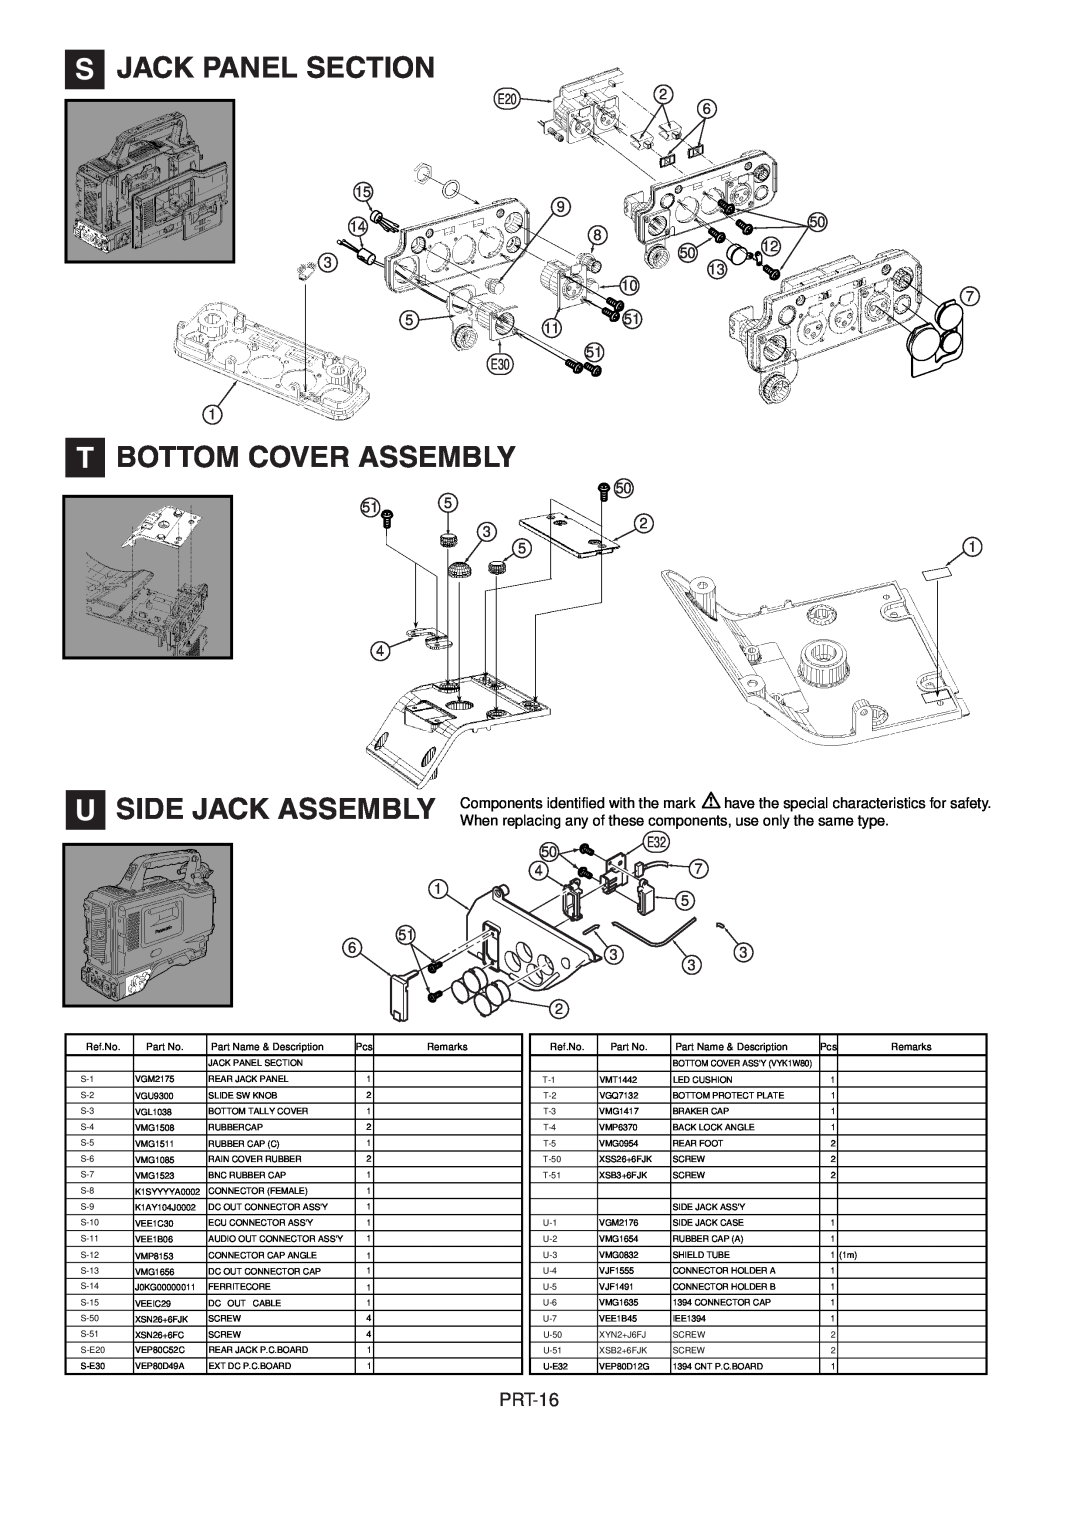 Panasonic AJ-HDX900MC manual S Jack Panel Section, T Bottom Cover Assembly, U Side Jack Assembly, PRT-16, Ref.No, Remarks 